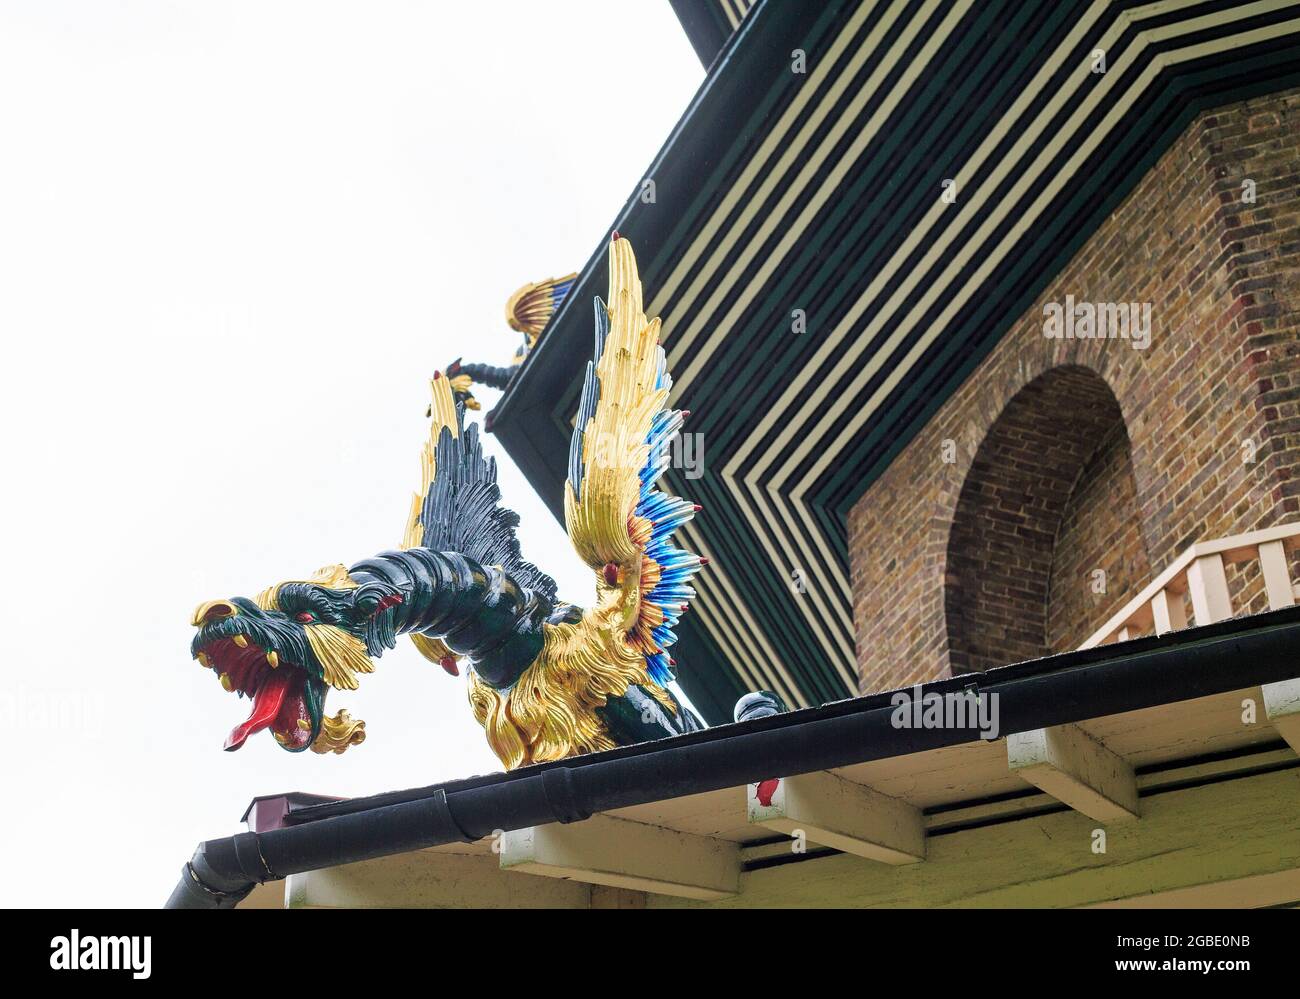 Grande pagode, Kew Gardens, Londres, 2021. Réplique dragon sur l'un des balcons de la pagode de 10 étages, les dragons originaux ont été enlevés en 1823 an Banque D'Images